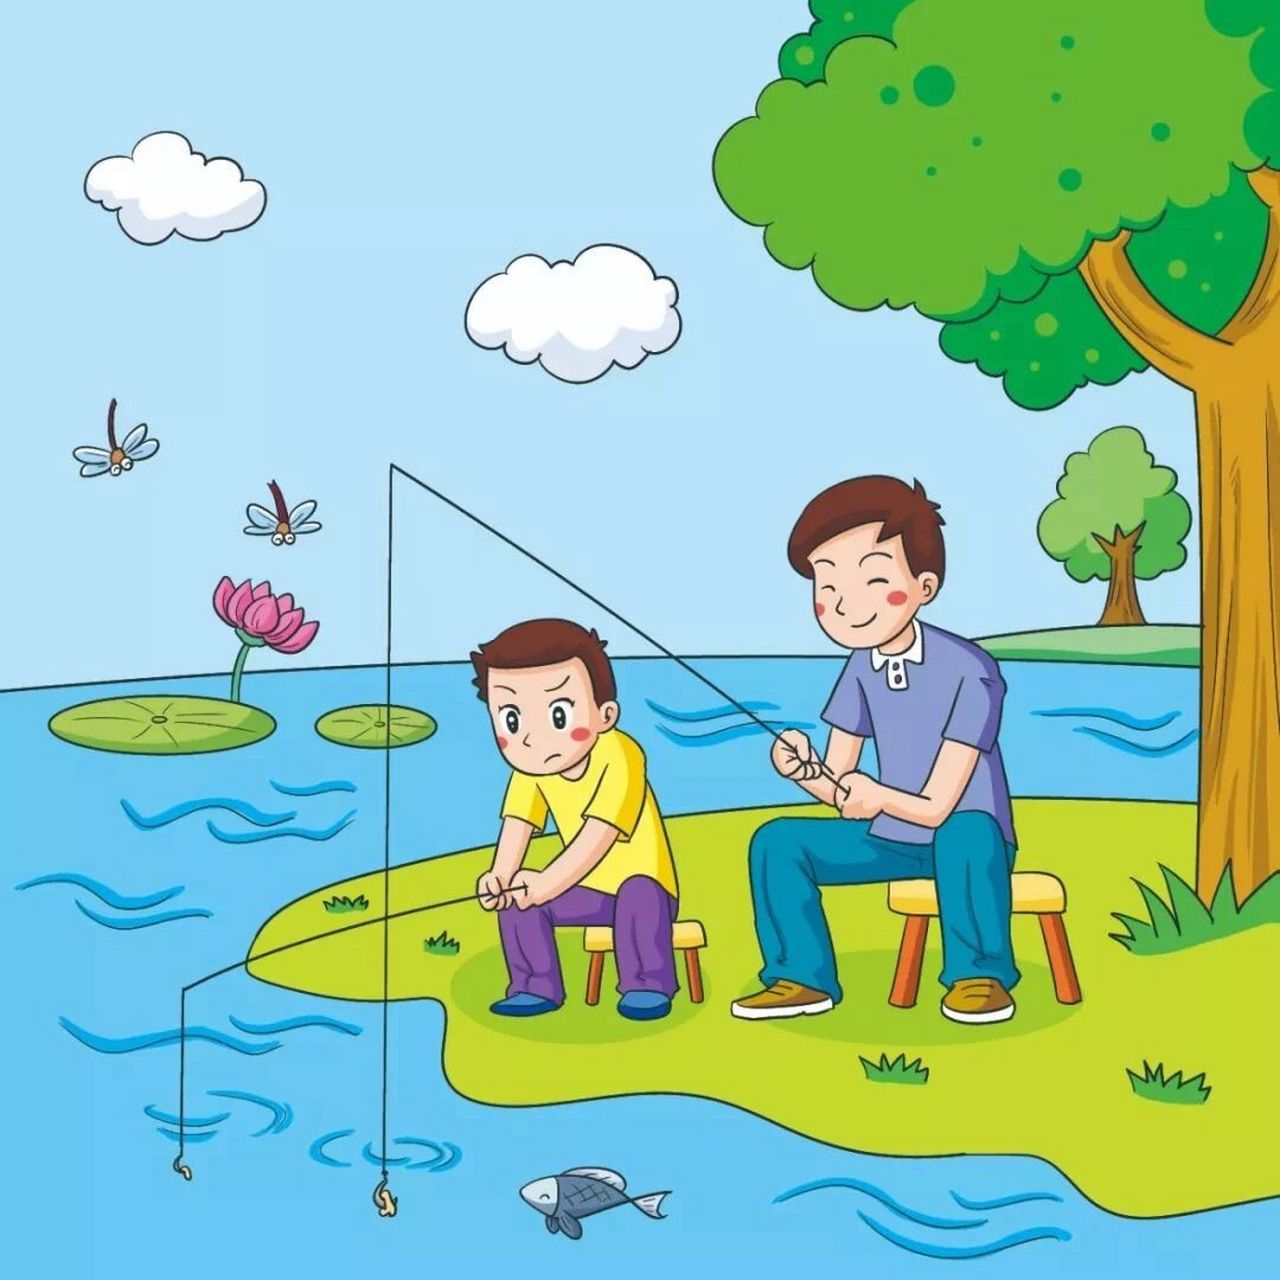 看图写话 钓鱼 星期天,风和日丽,爸爸带着我来到池塘边钓鱼